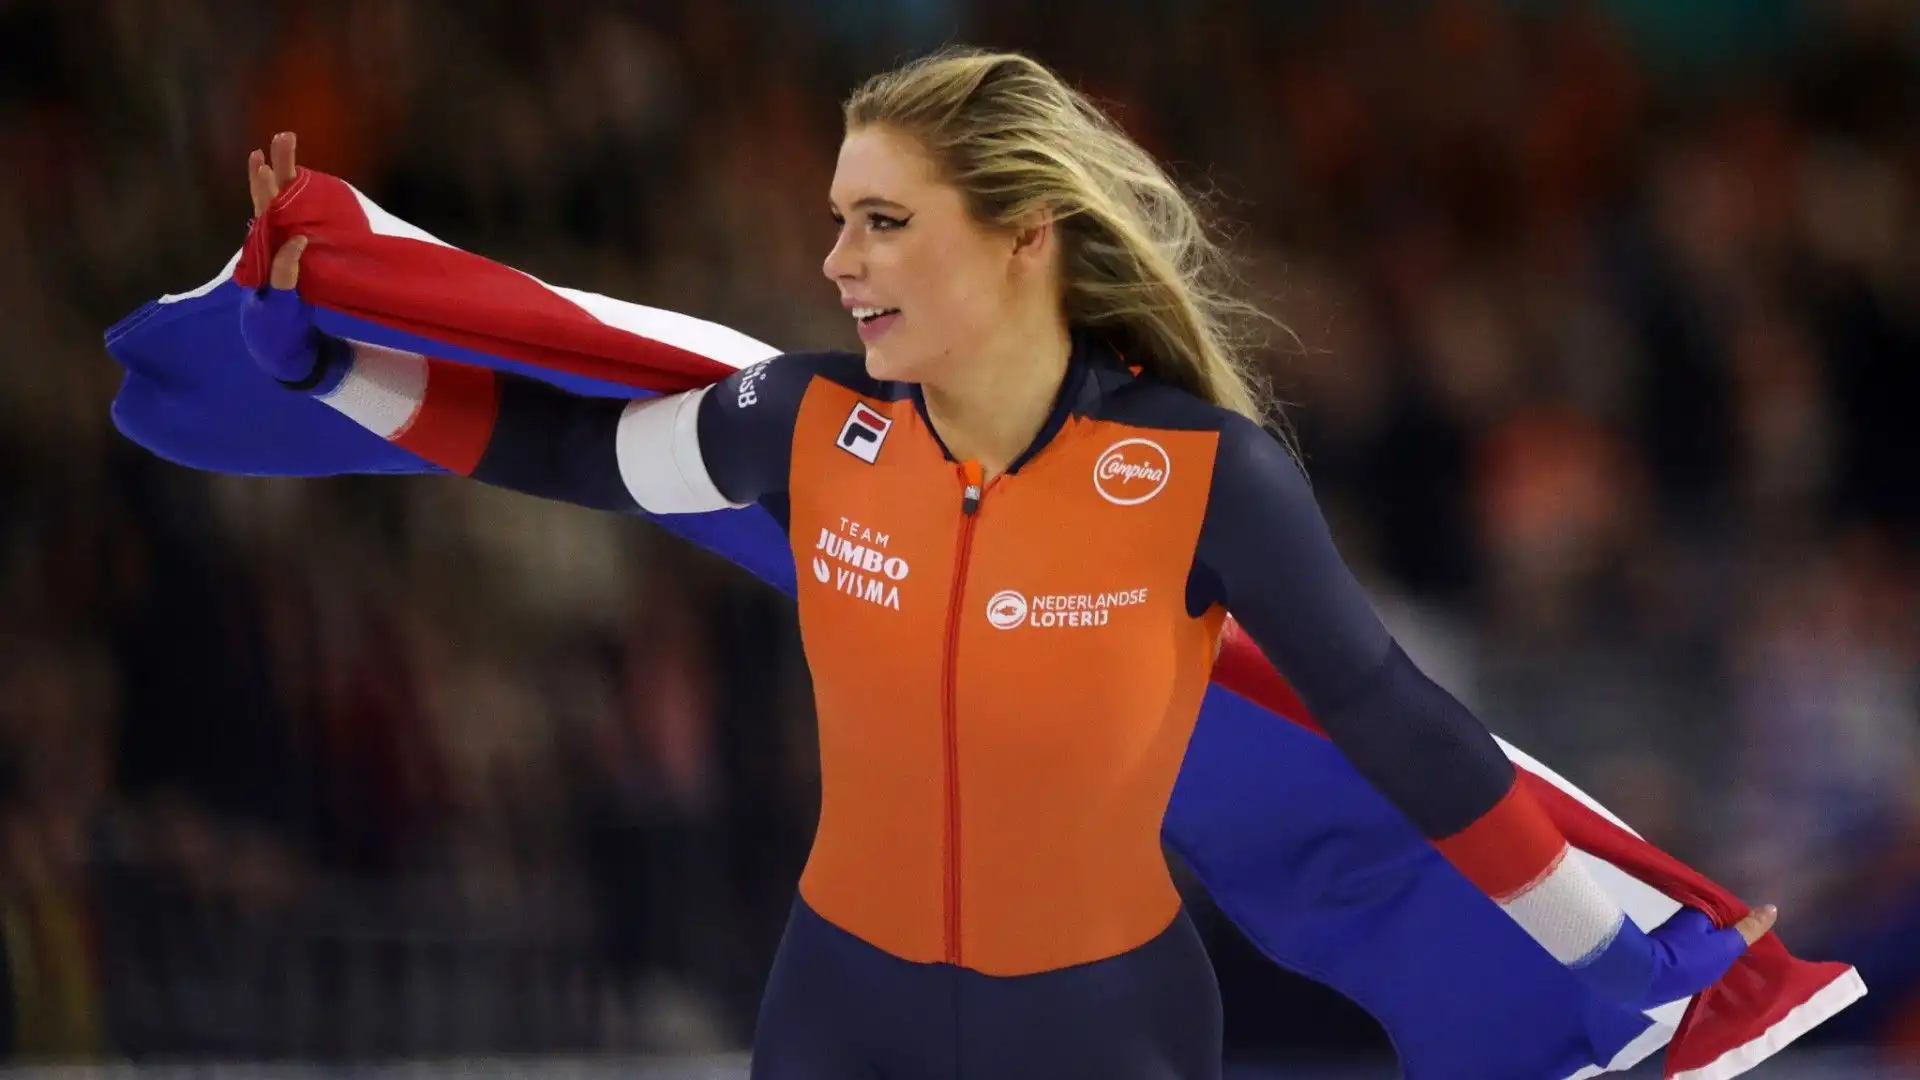 Jutta Monica Leerdam è una pattinatrice di velocità su ghiaccio olandese